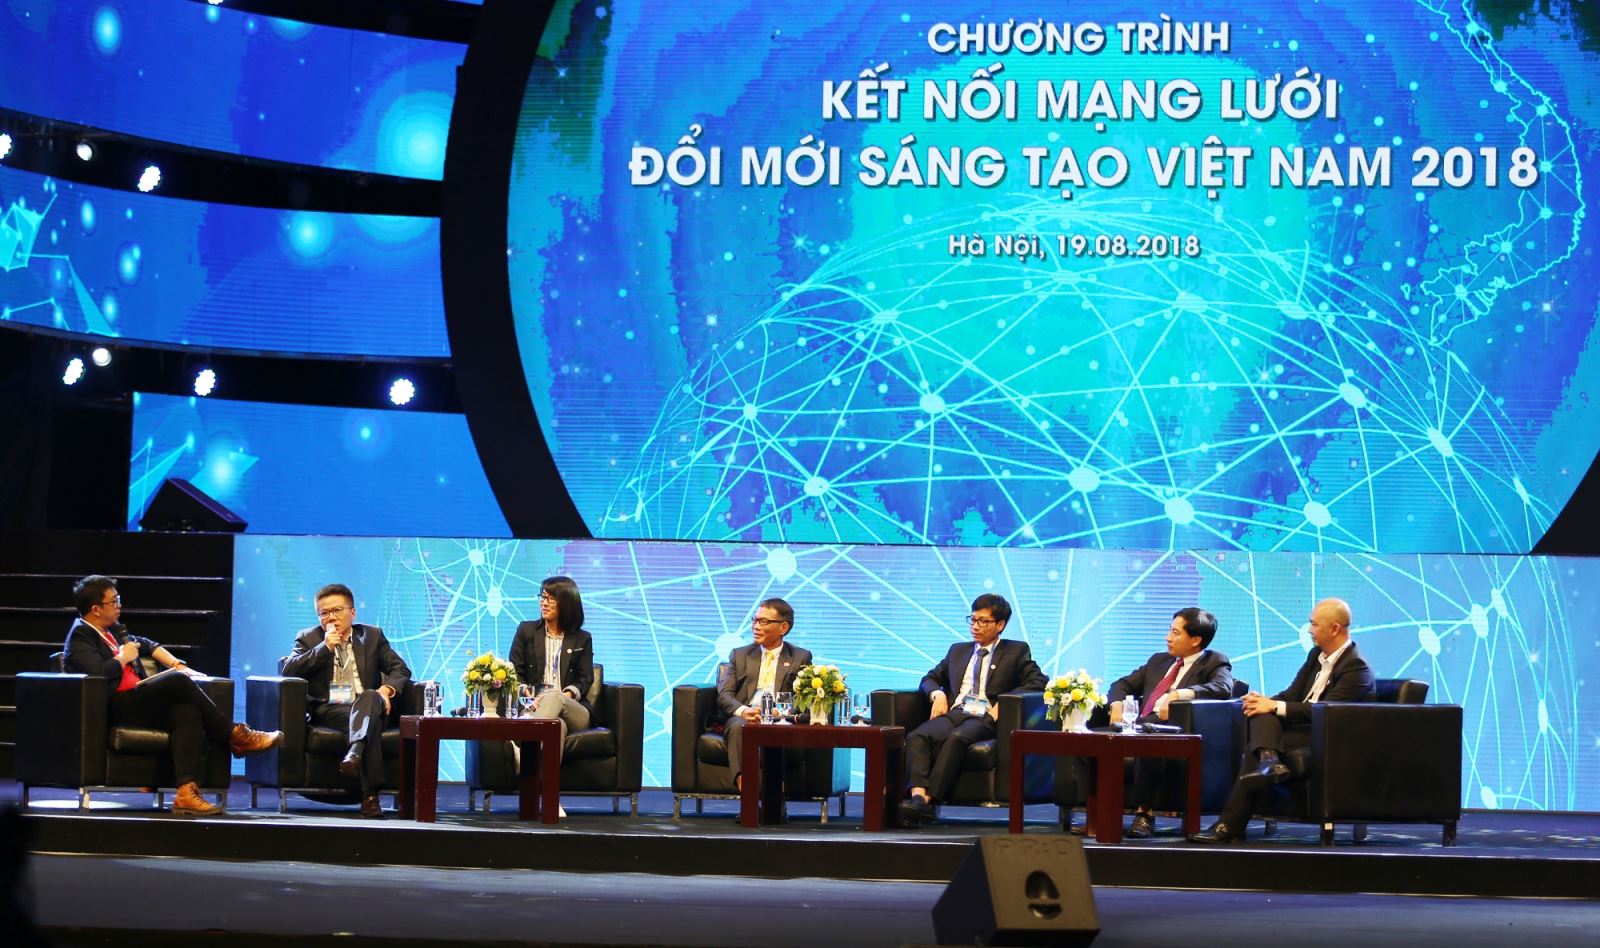 Chương trình kết nối mạng lưới đổi mới sáng tạo Việt Nam